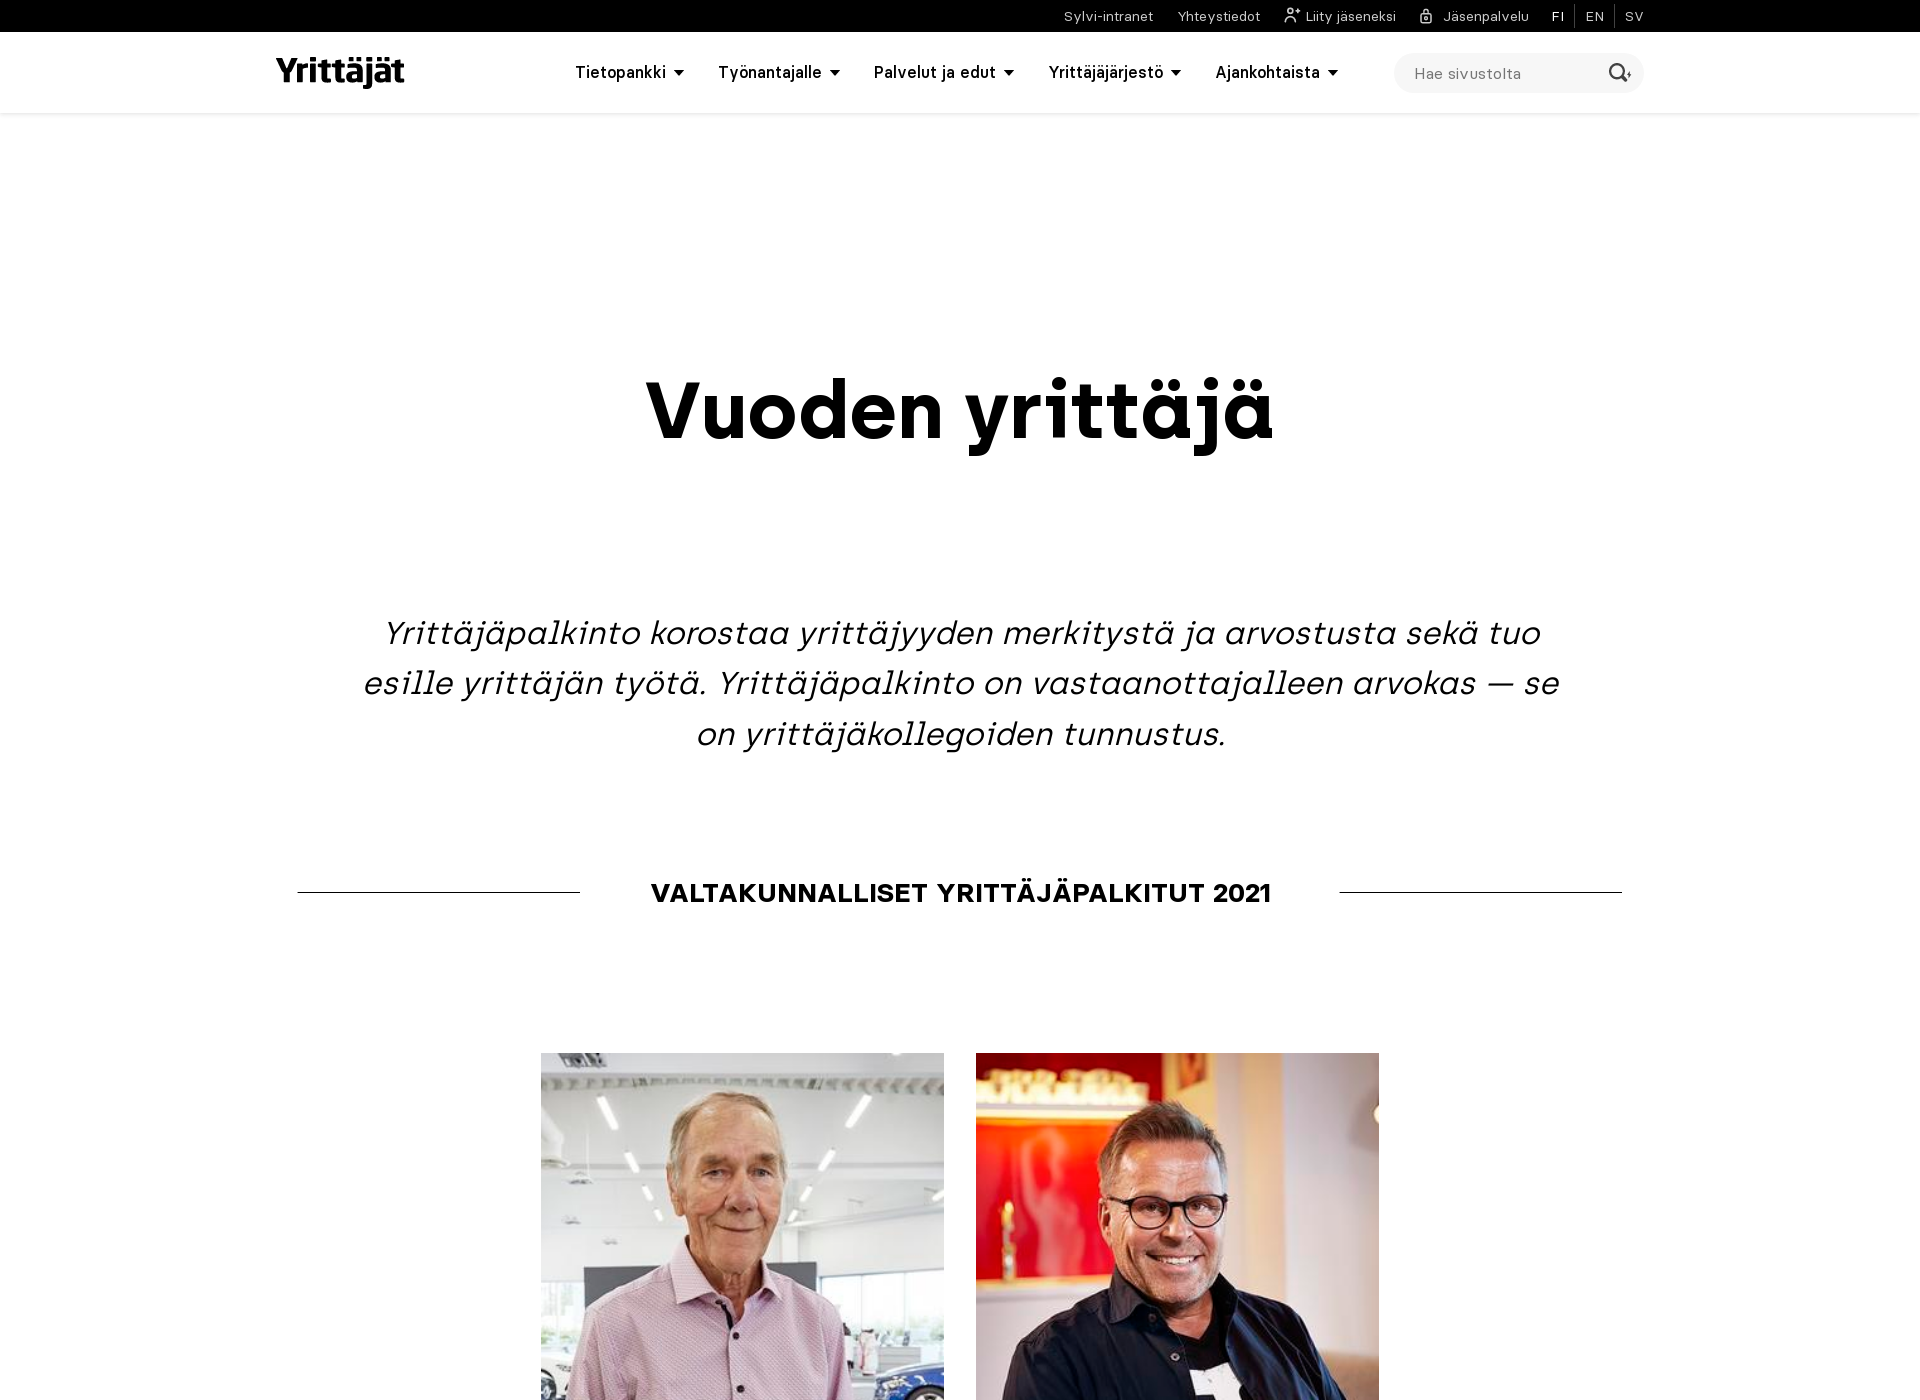 Näyttökuva vuodenyrittaja.fi